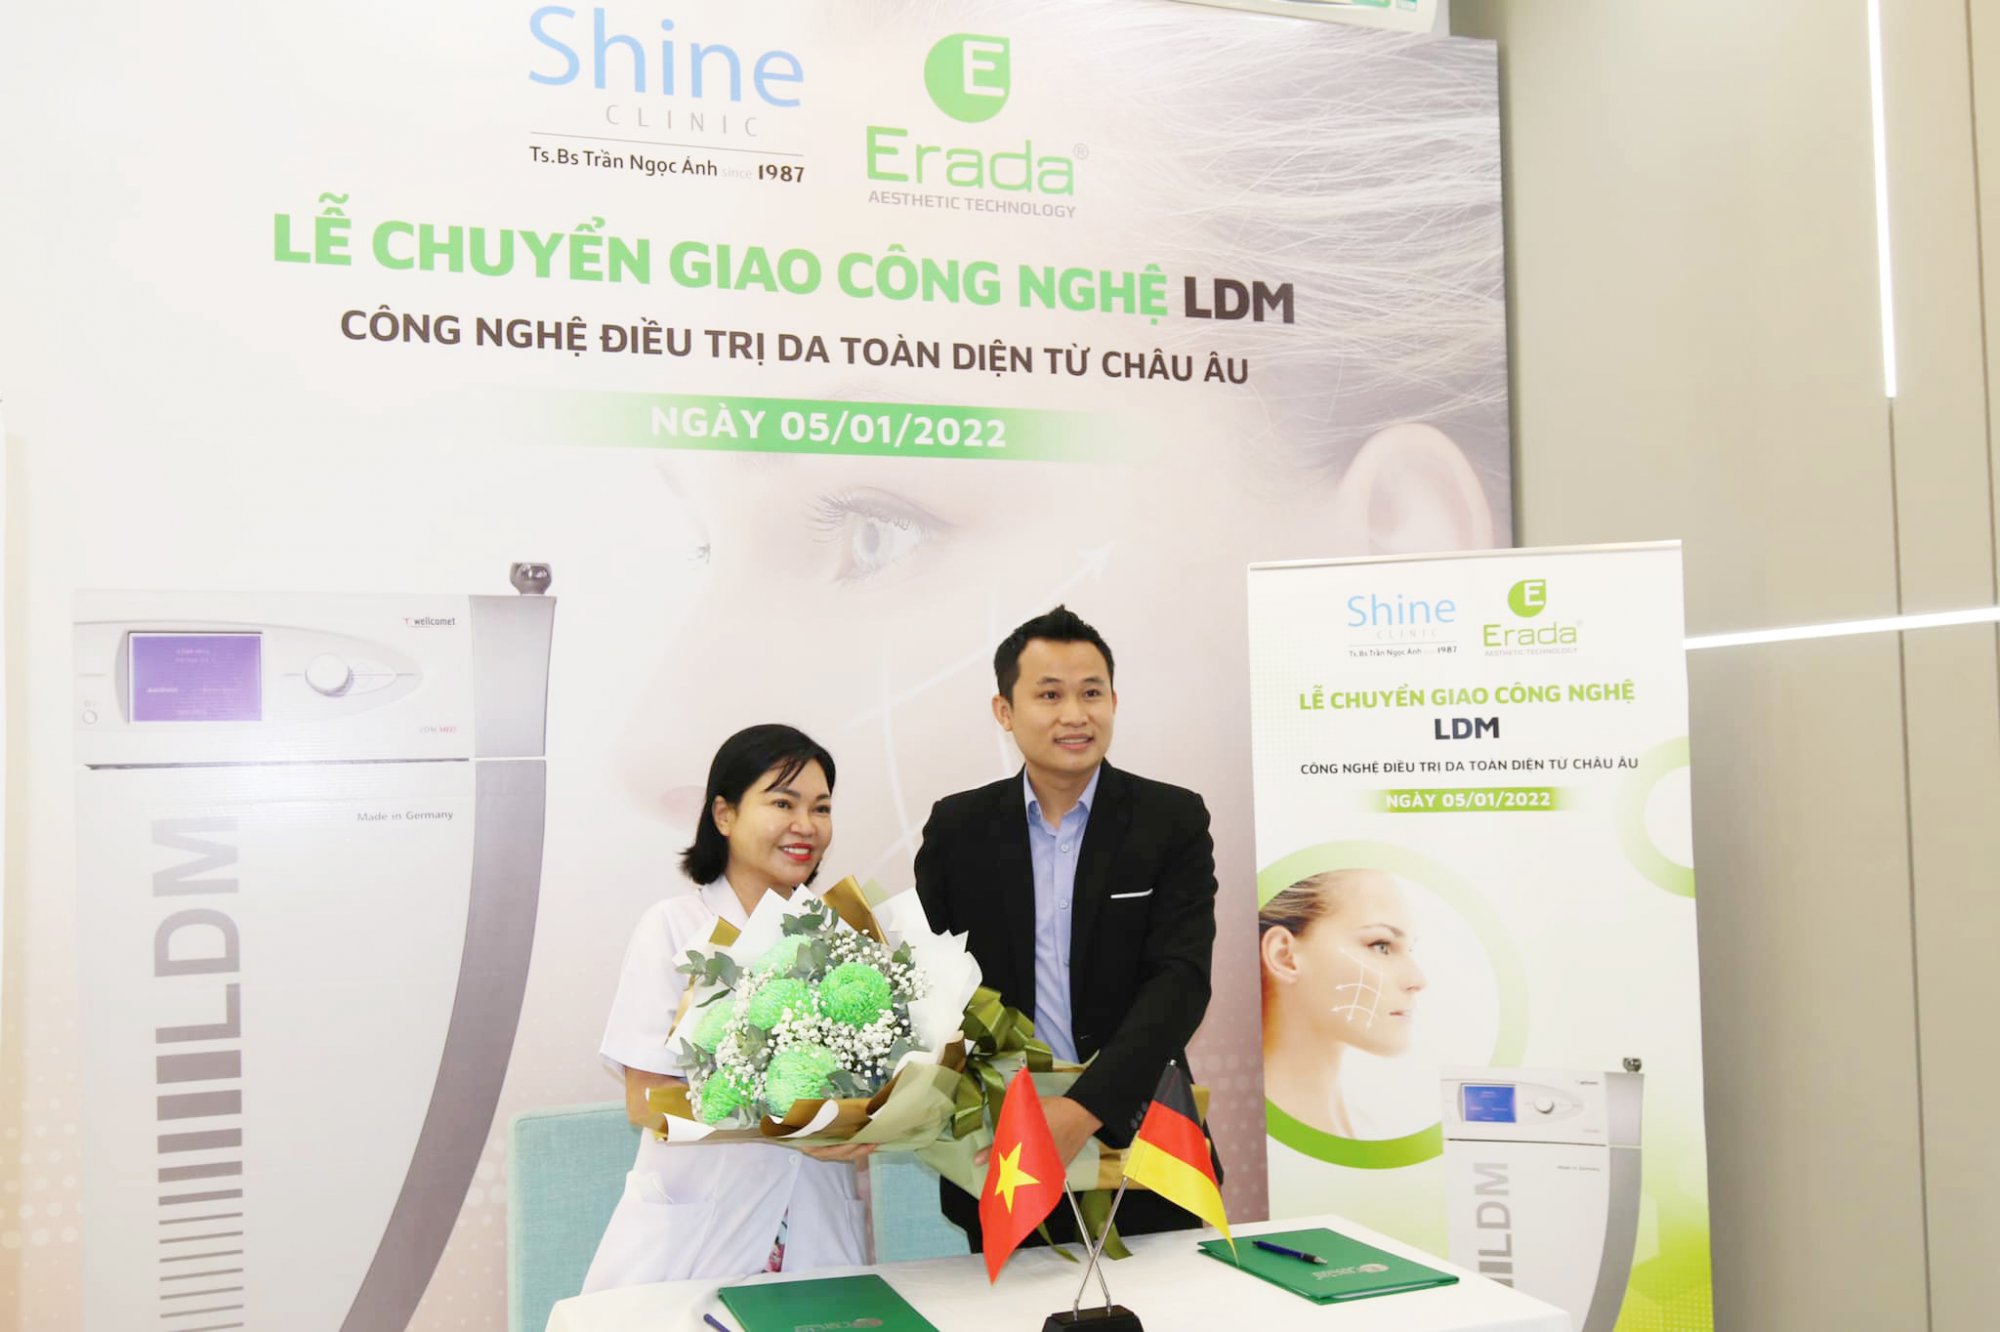 Chuyển giao công nghệ LDM tại Shynh Clinic Bác sĩ Trần Ngọc Ánh